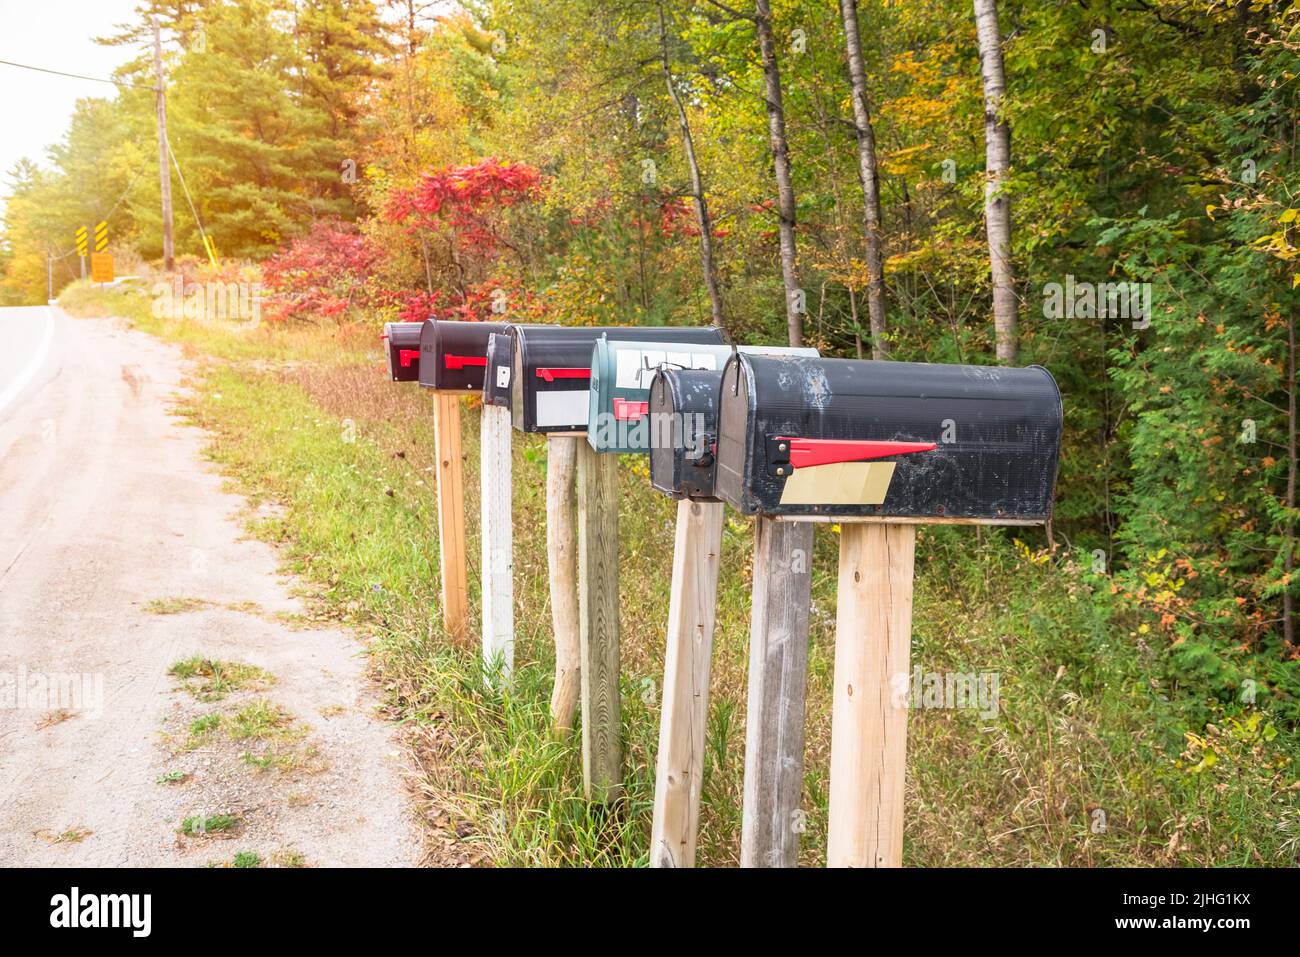 Fila de viejos buzones de metal a lo largo de un camino rural en otoño Foto de stock